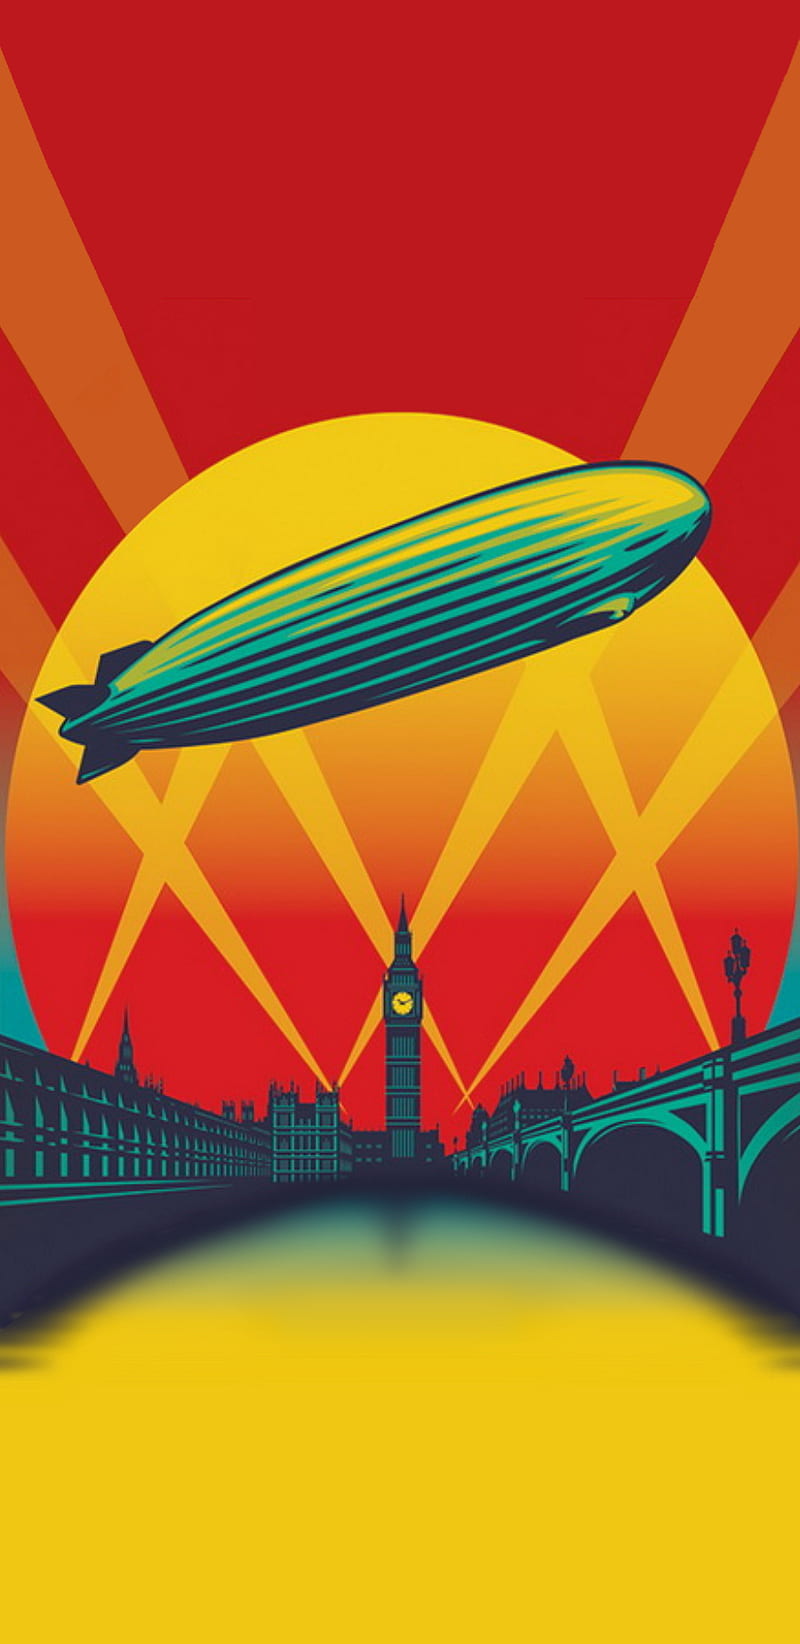 Led Zeppelin - Led Zeppelin Wallpaper (27517840) - Fanpop